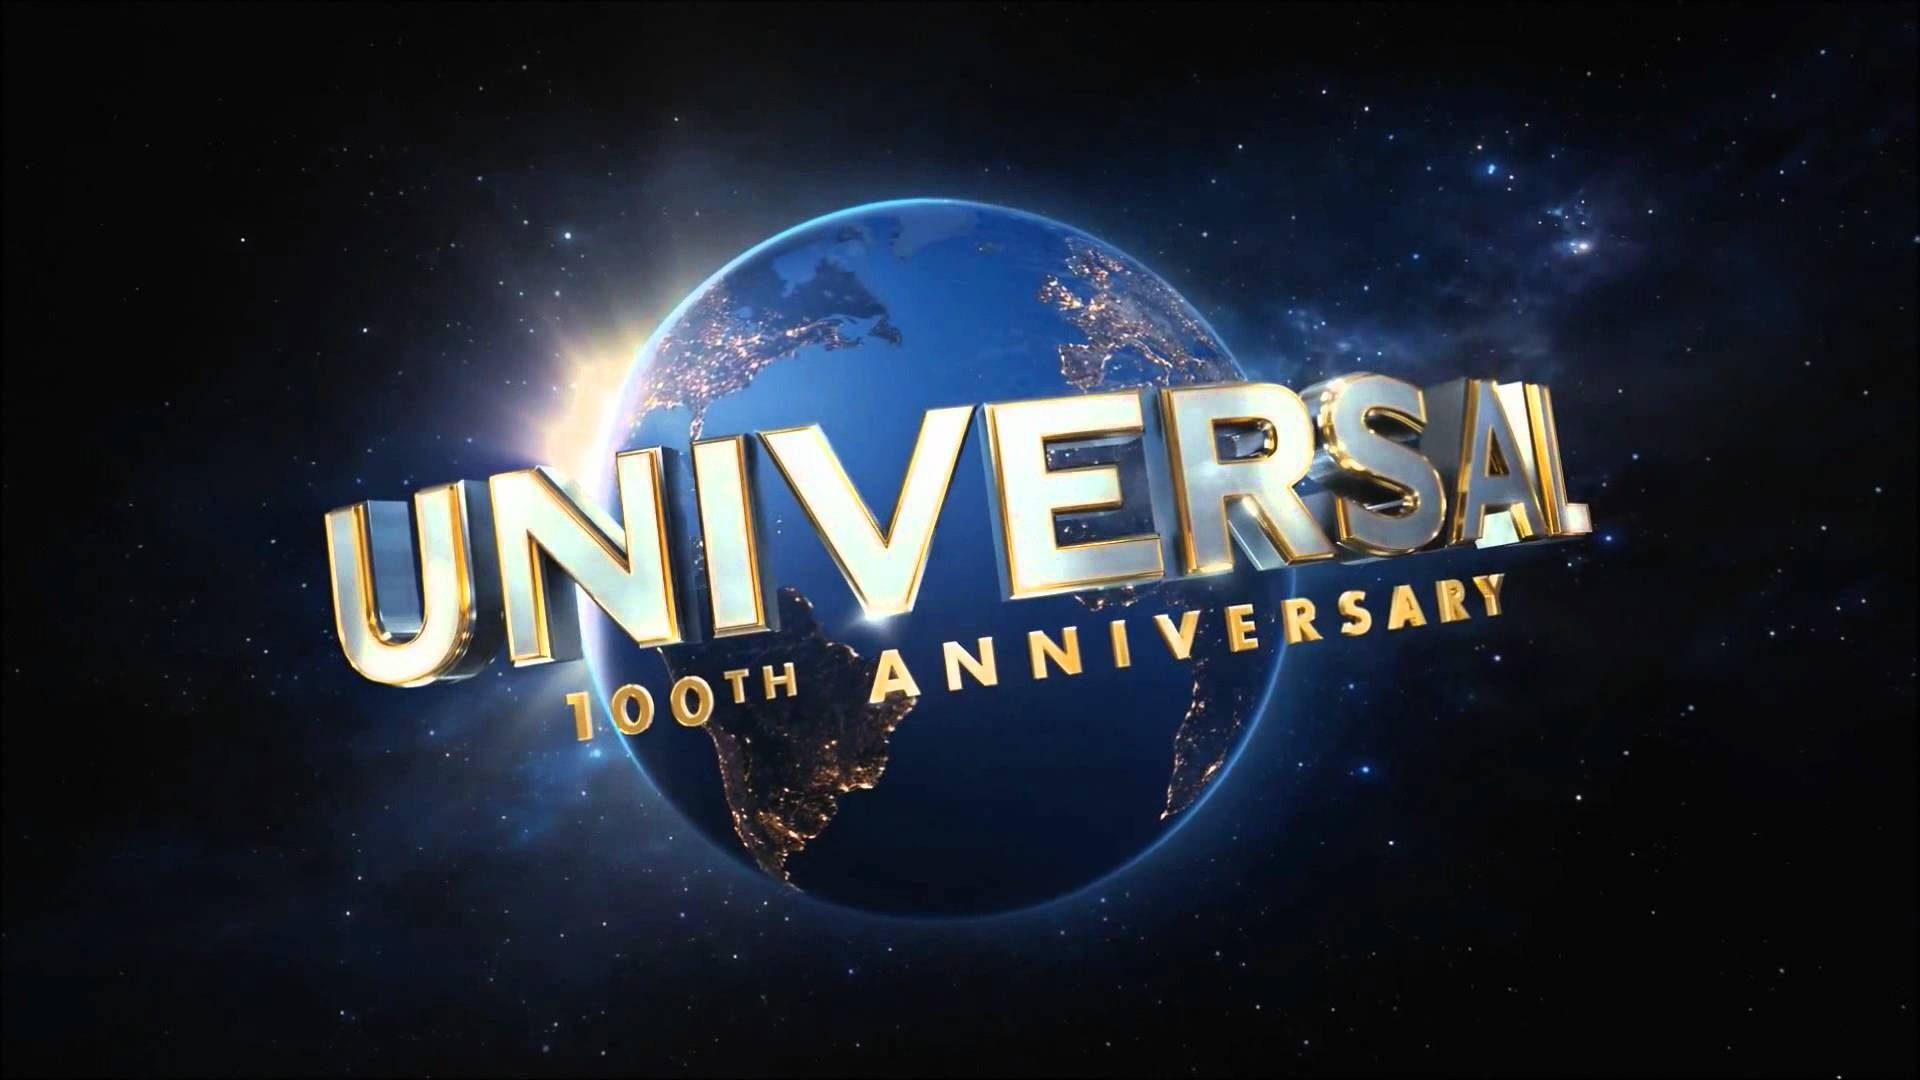 Aniversáriode 100 Anos Da Universal Studios. Papel de Parede